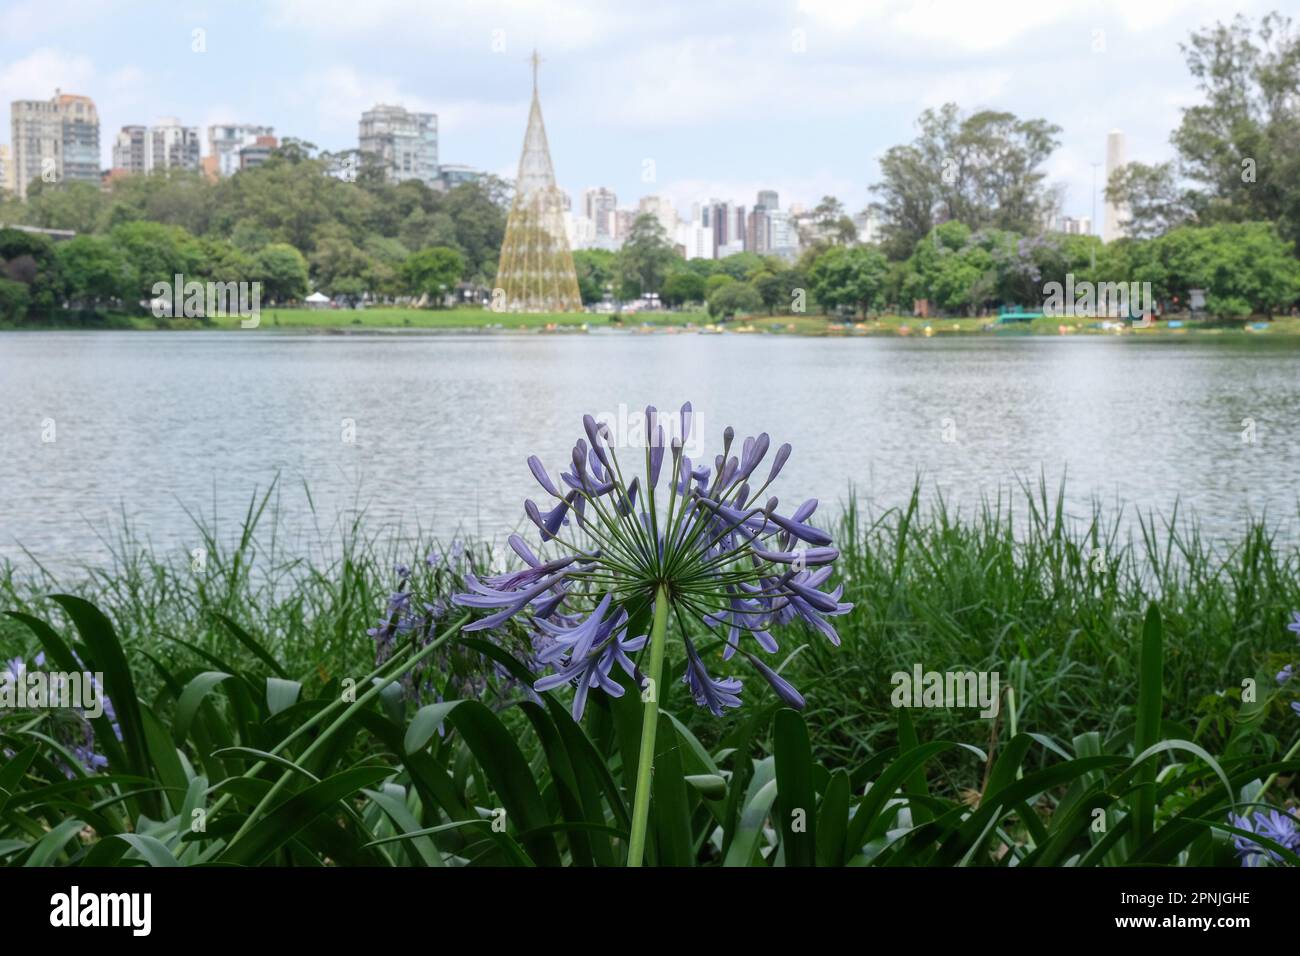 Nahaufnahme der violetten blume amaryllidaceae mit isoliertem ibirapuera Park See in Sao Paulo. Selektivfokus der violetten Blume. Offener Raum. Stockfoto